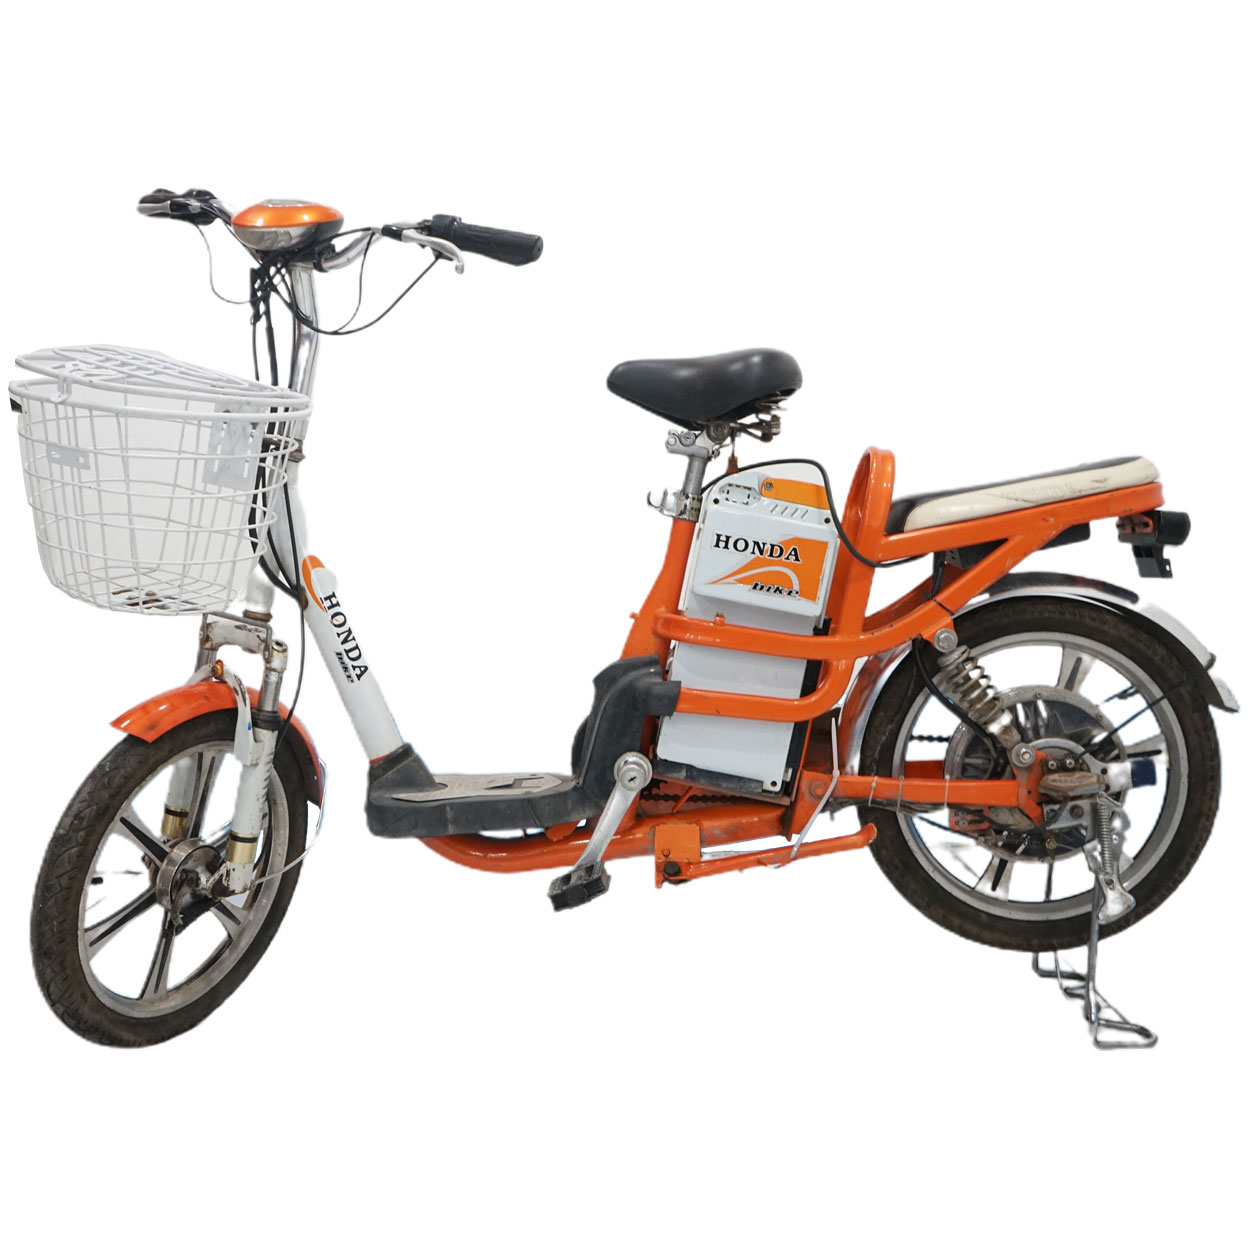 xe dap dien honda cam cu gia re 1 - Xe đạp điện Honda màu cam cũ giá rẻ